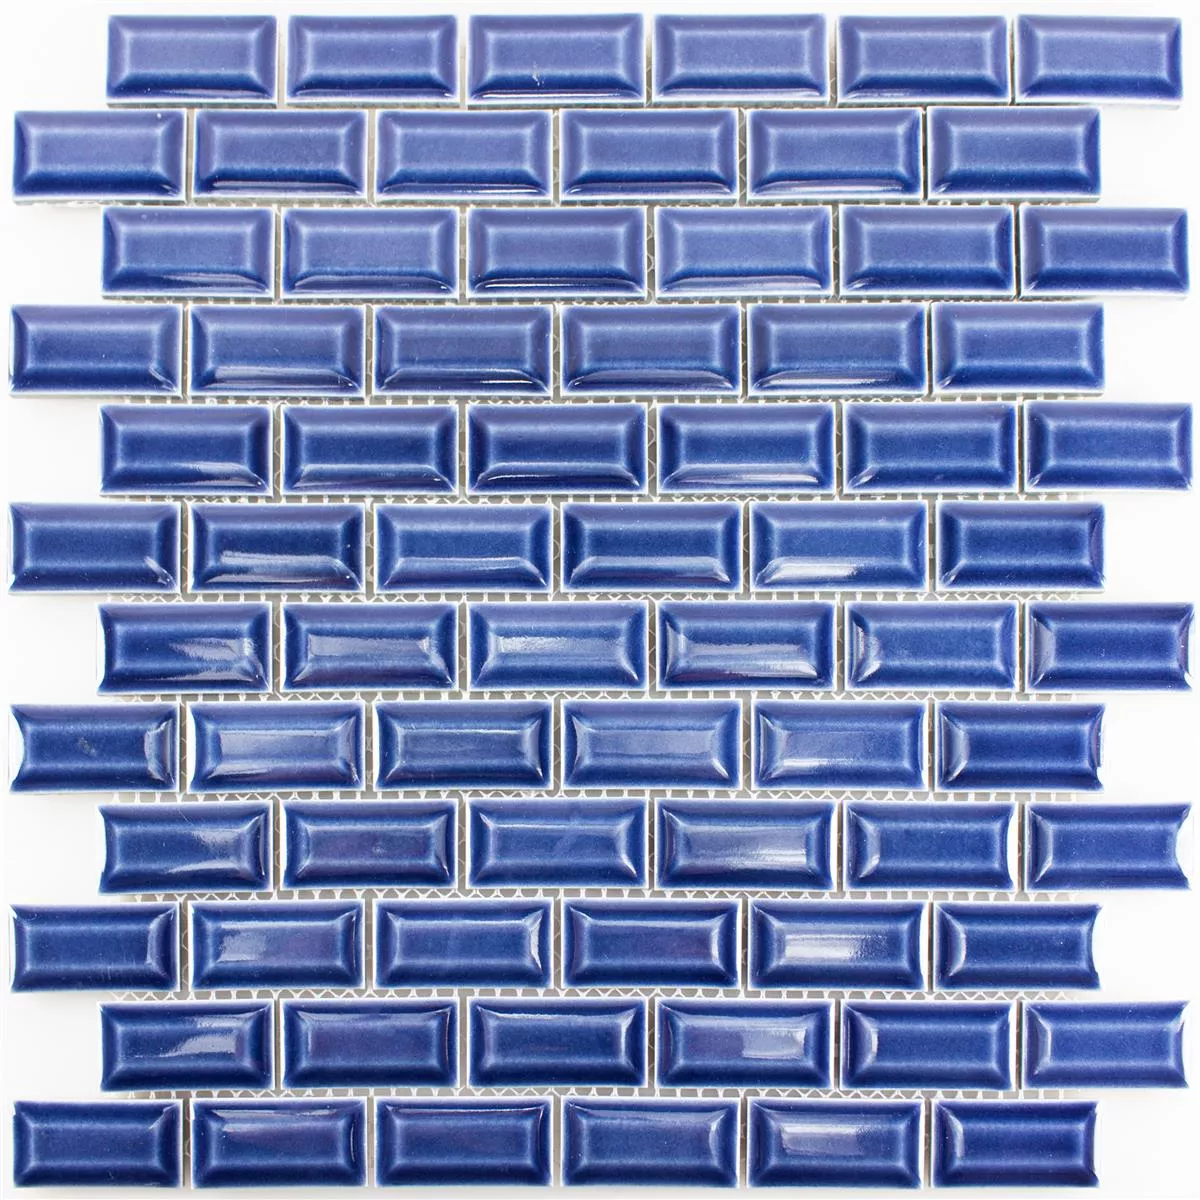 Πρότυπο από Kεραμικό Mωσαϊκό Πλακάκια Organica Metro Μπλε